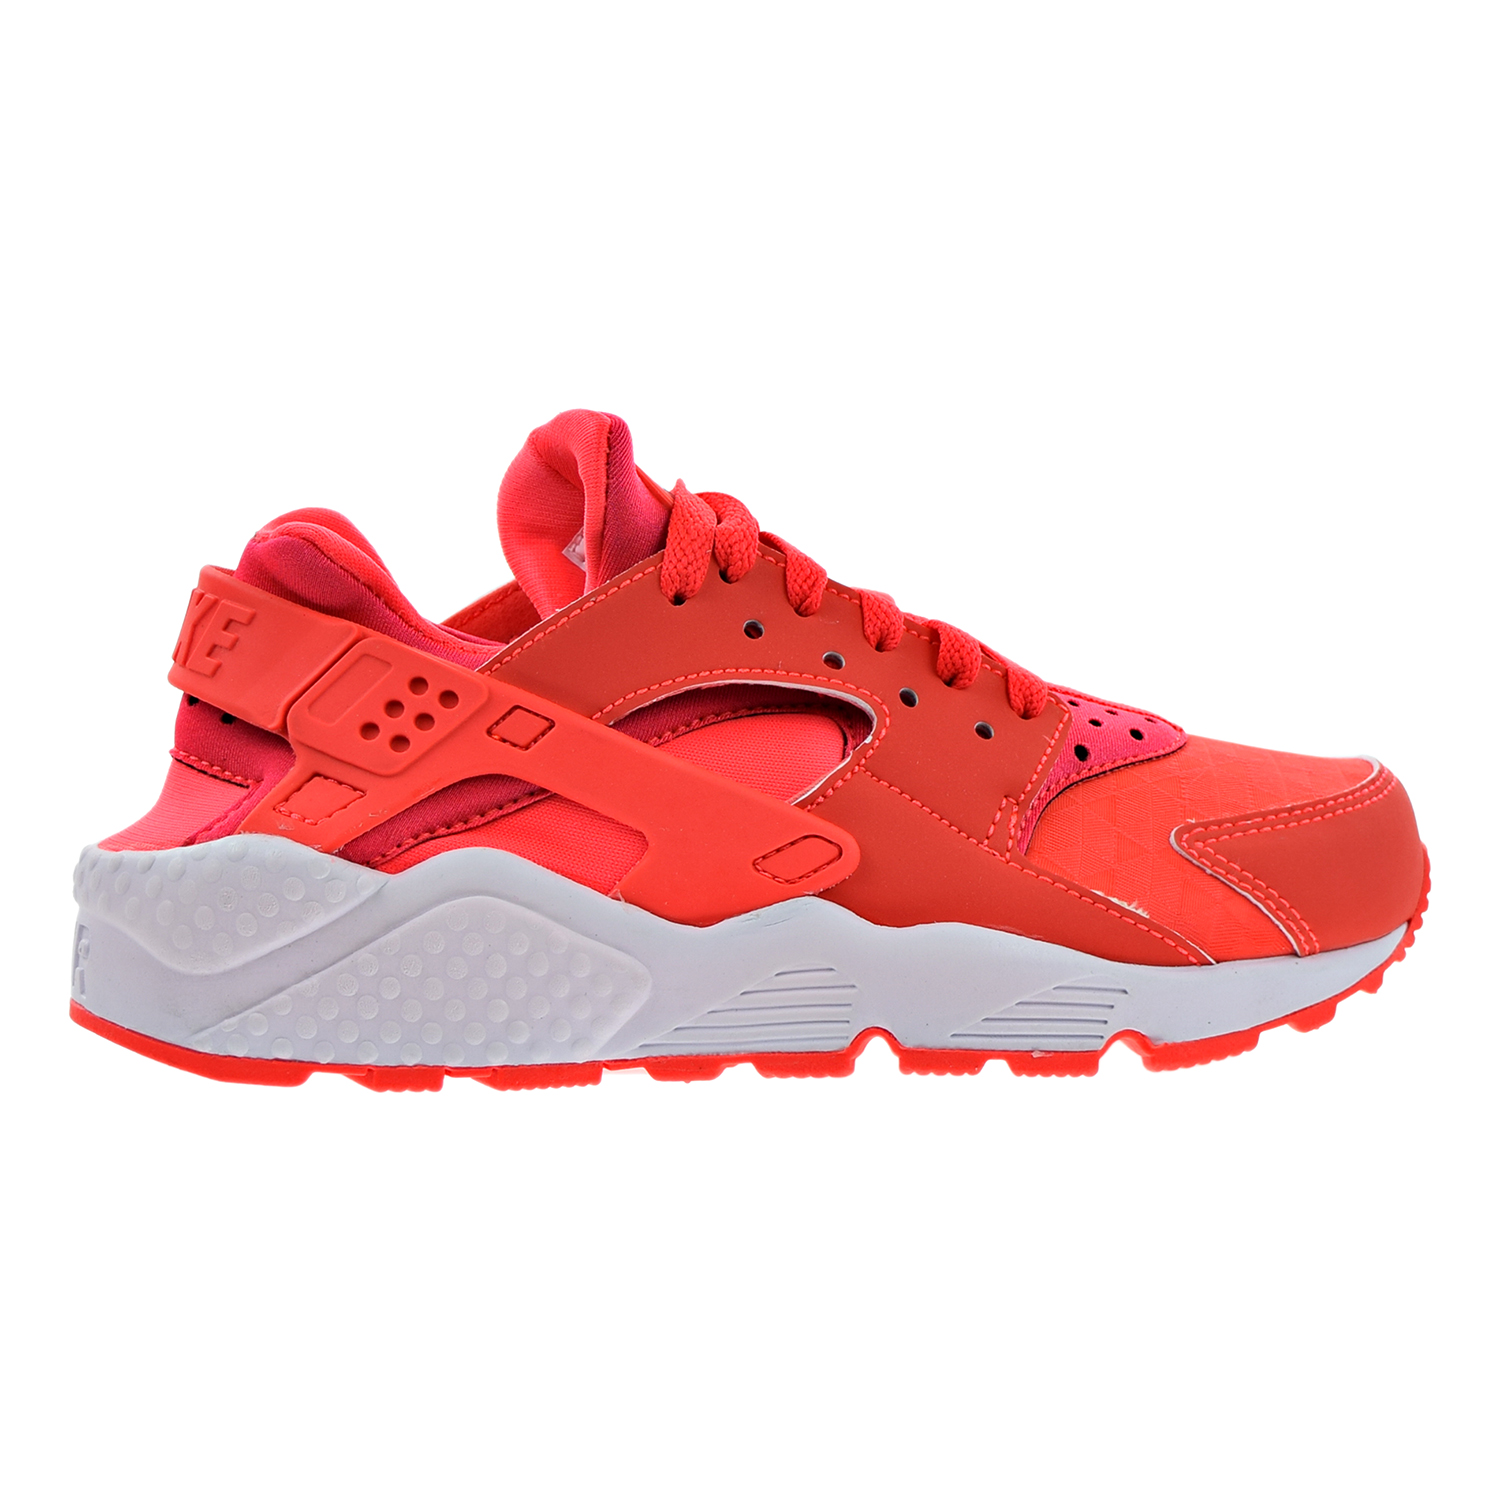 Semicircle sulfur Distill Nike Air Huarache Run Womens Shoes Bright Crimson/Bright Crimson 634835-608  (5 B(M) US)